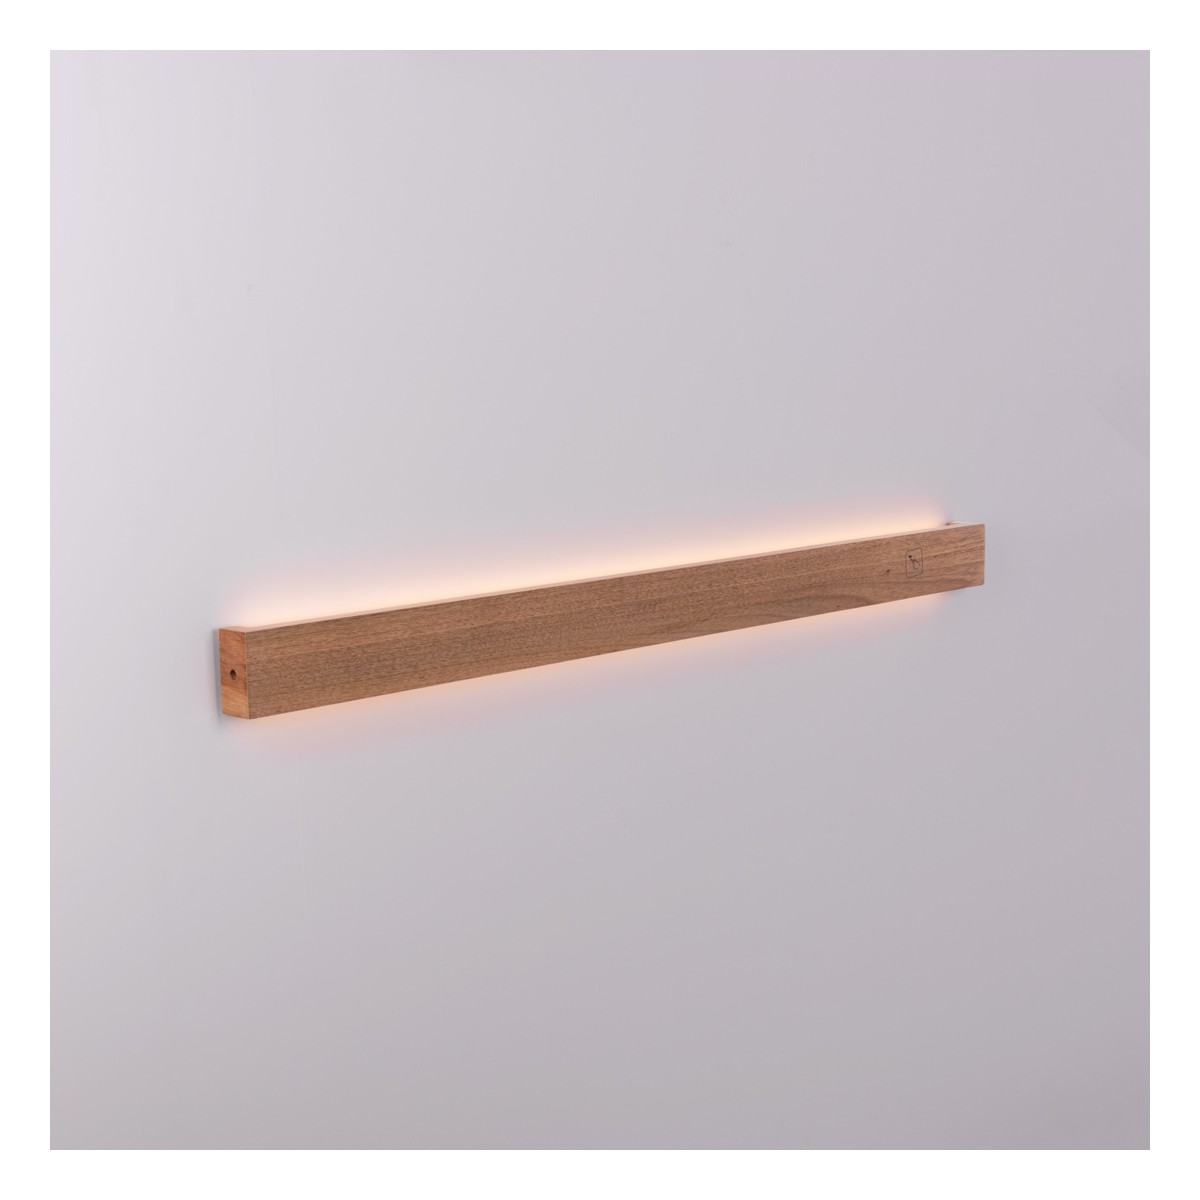 Wandleuchte aus Holz „Wooden“ - Dimmbar - 24W - 100 cm - dimmbare wandlampe